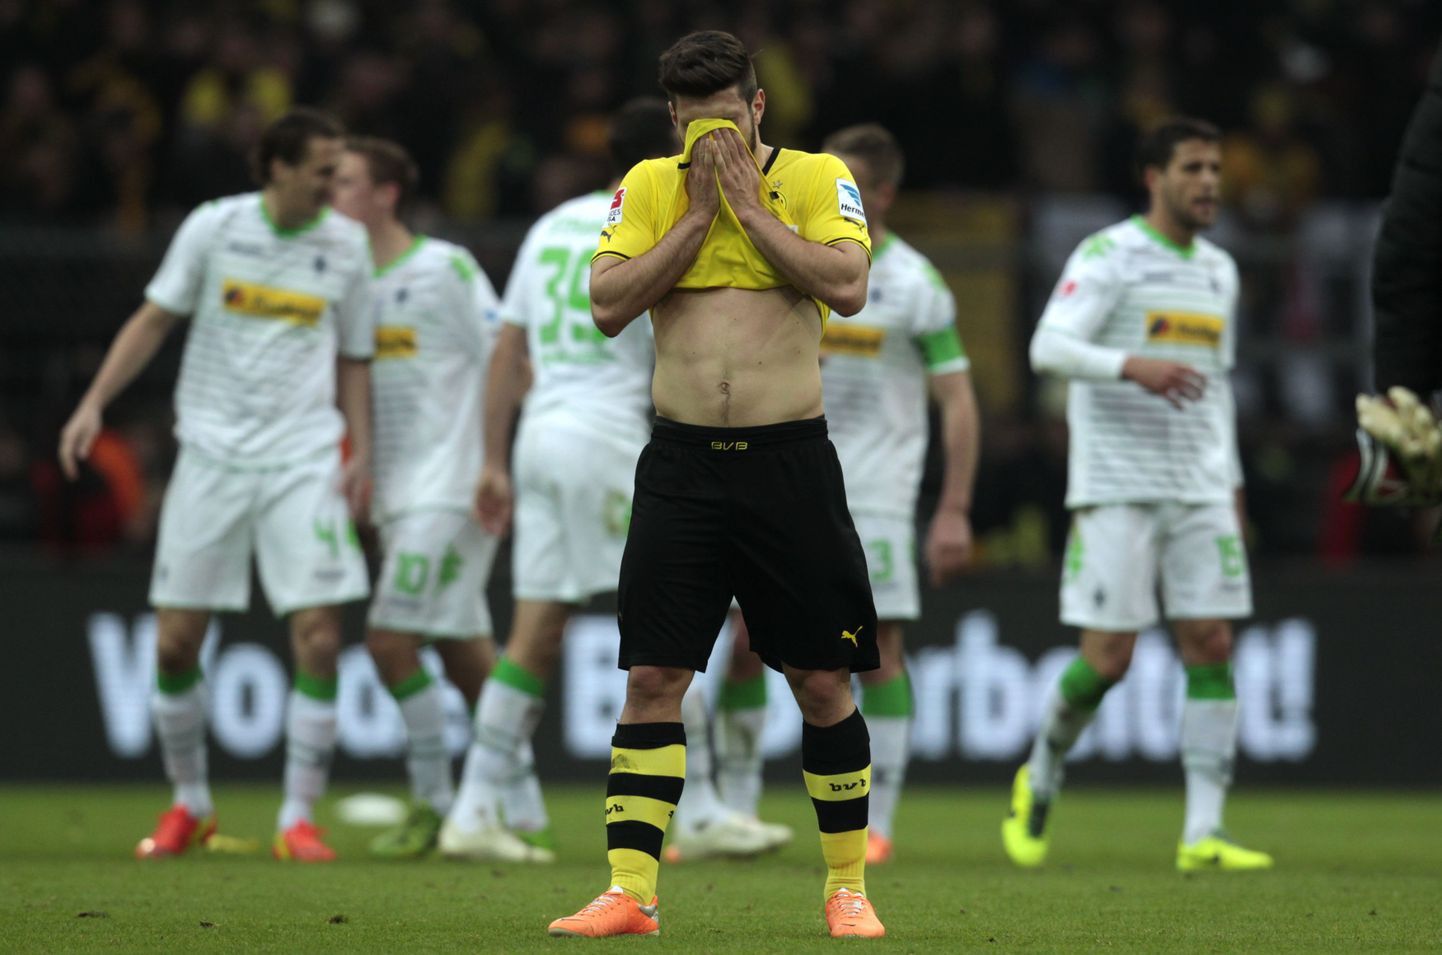 Pettunud Dortmundi mängija Milos Jojic pärast kaotust Mönchengladbachile